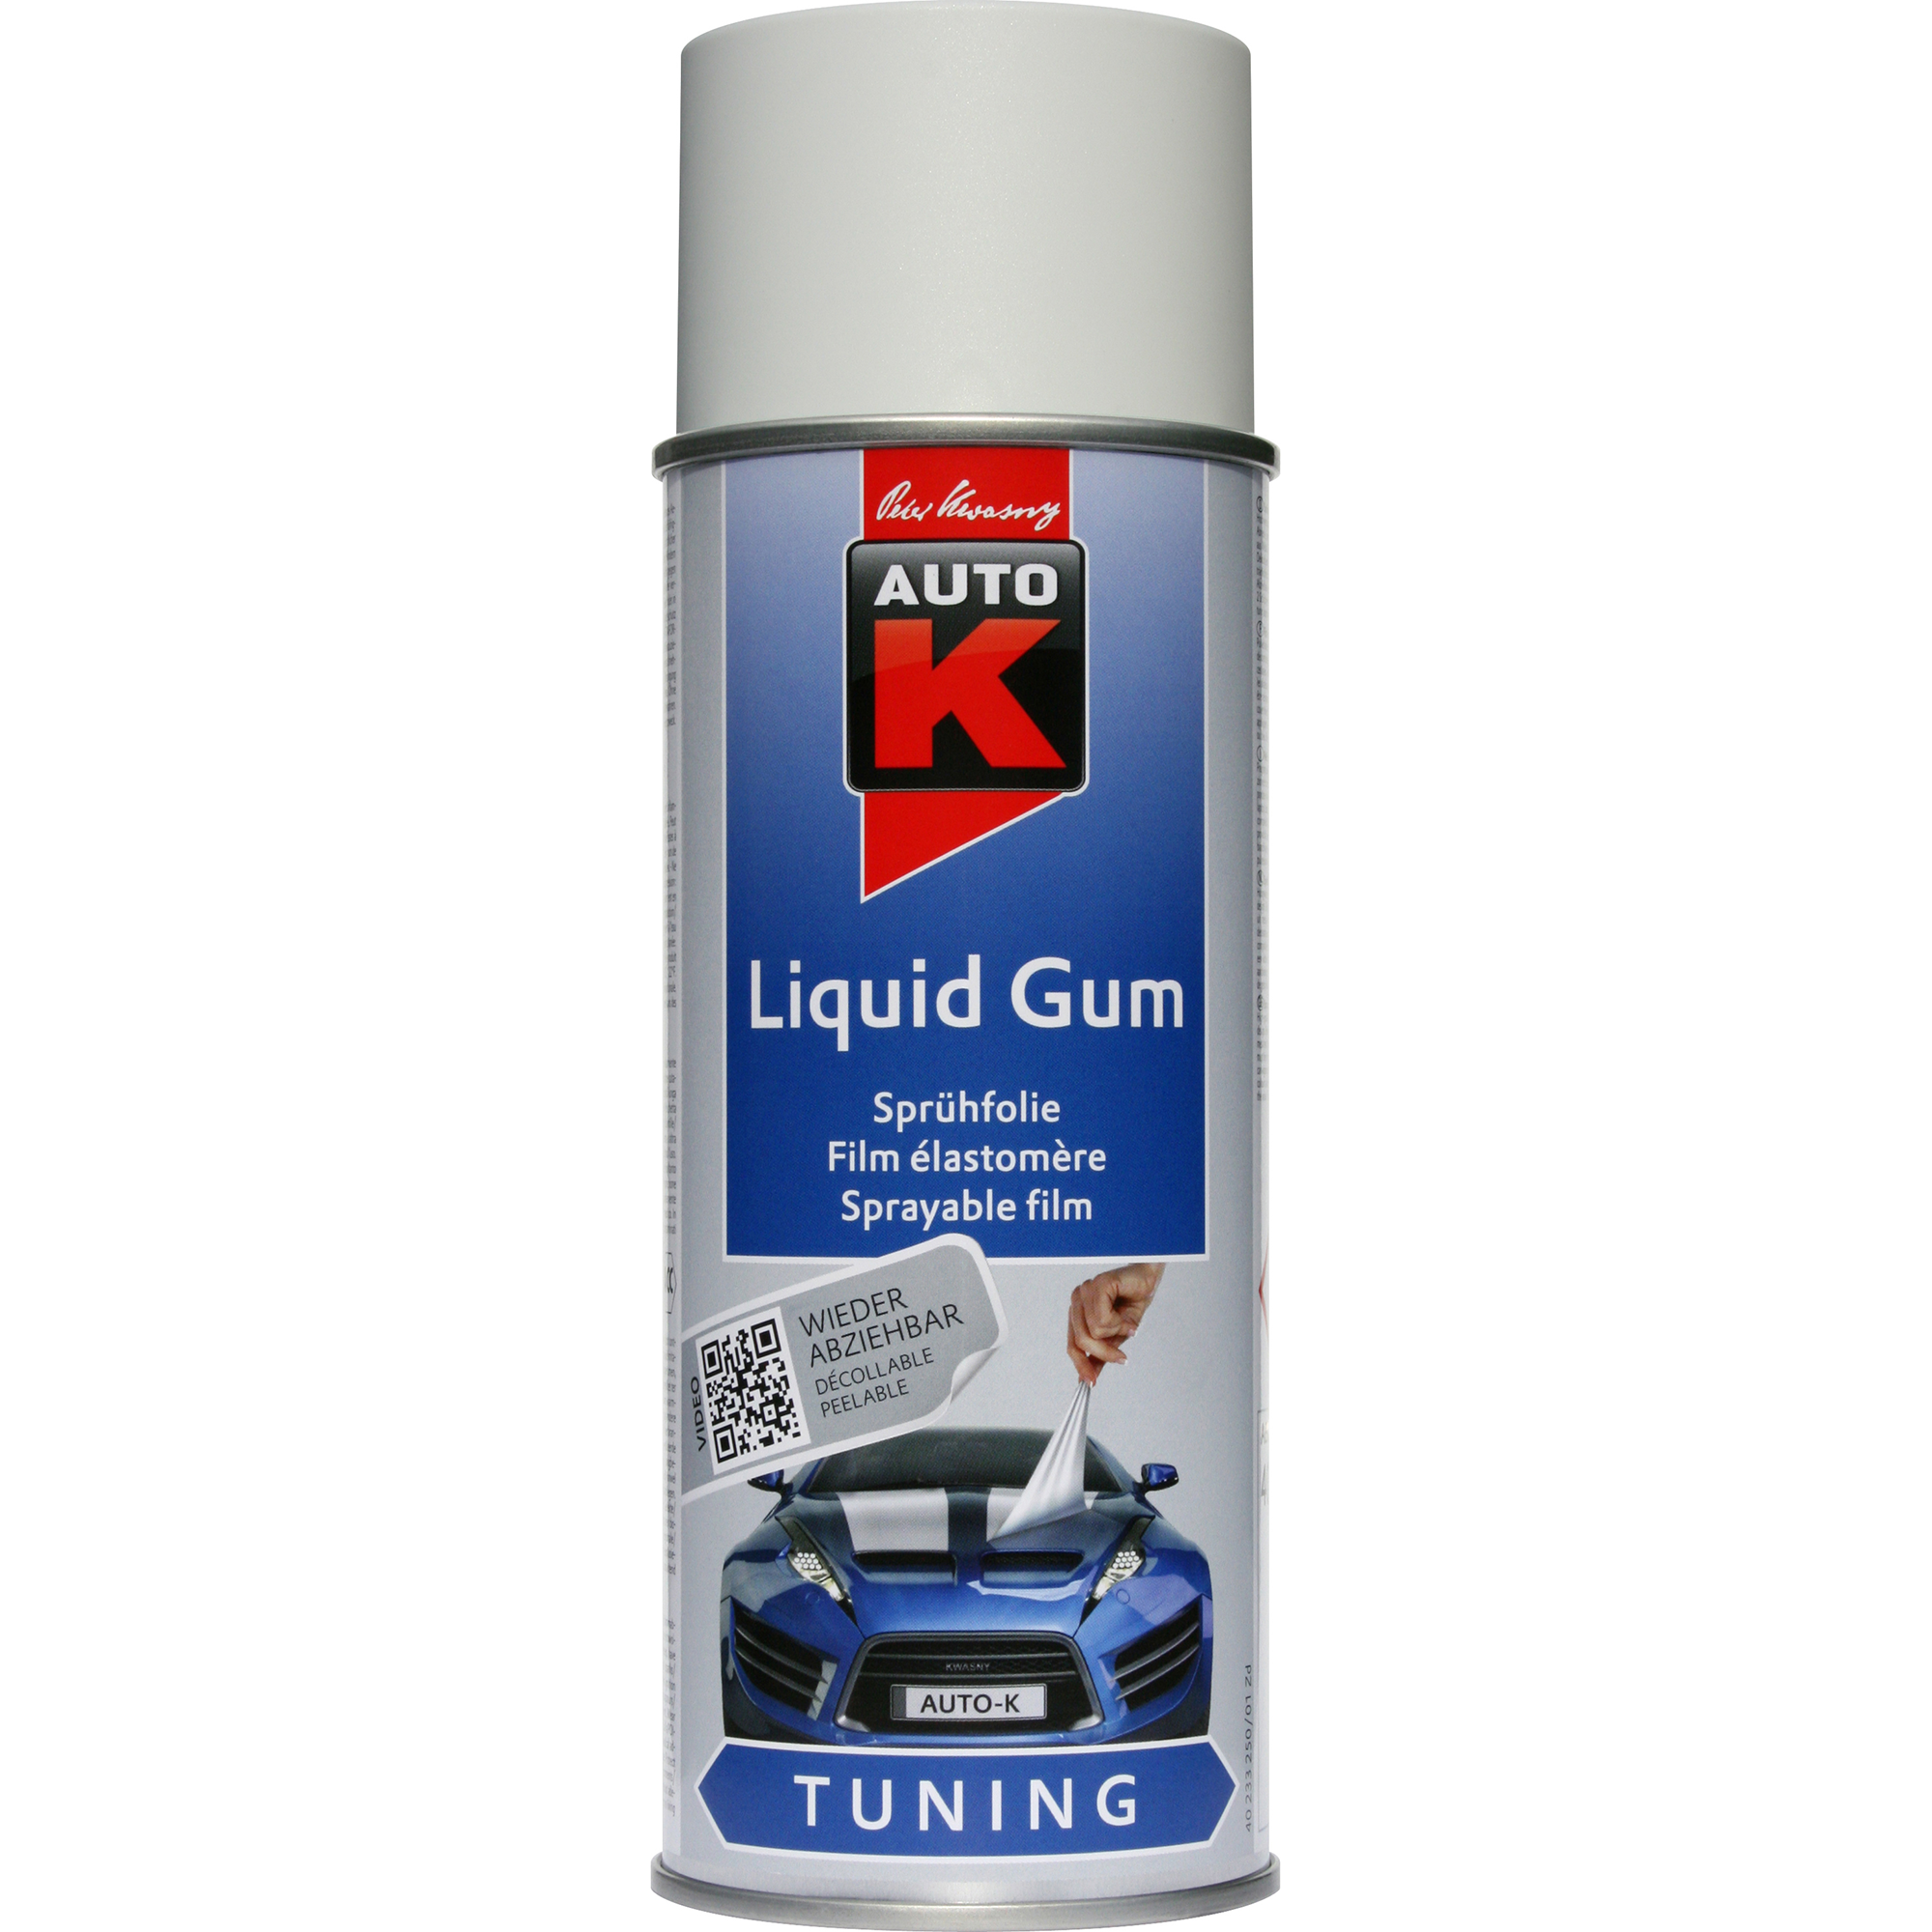 Sprühfolie Liquid Gum 'Auto-K' weiß 400 ml + product picture